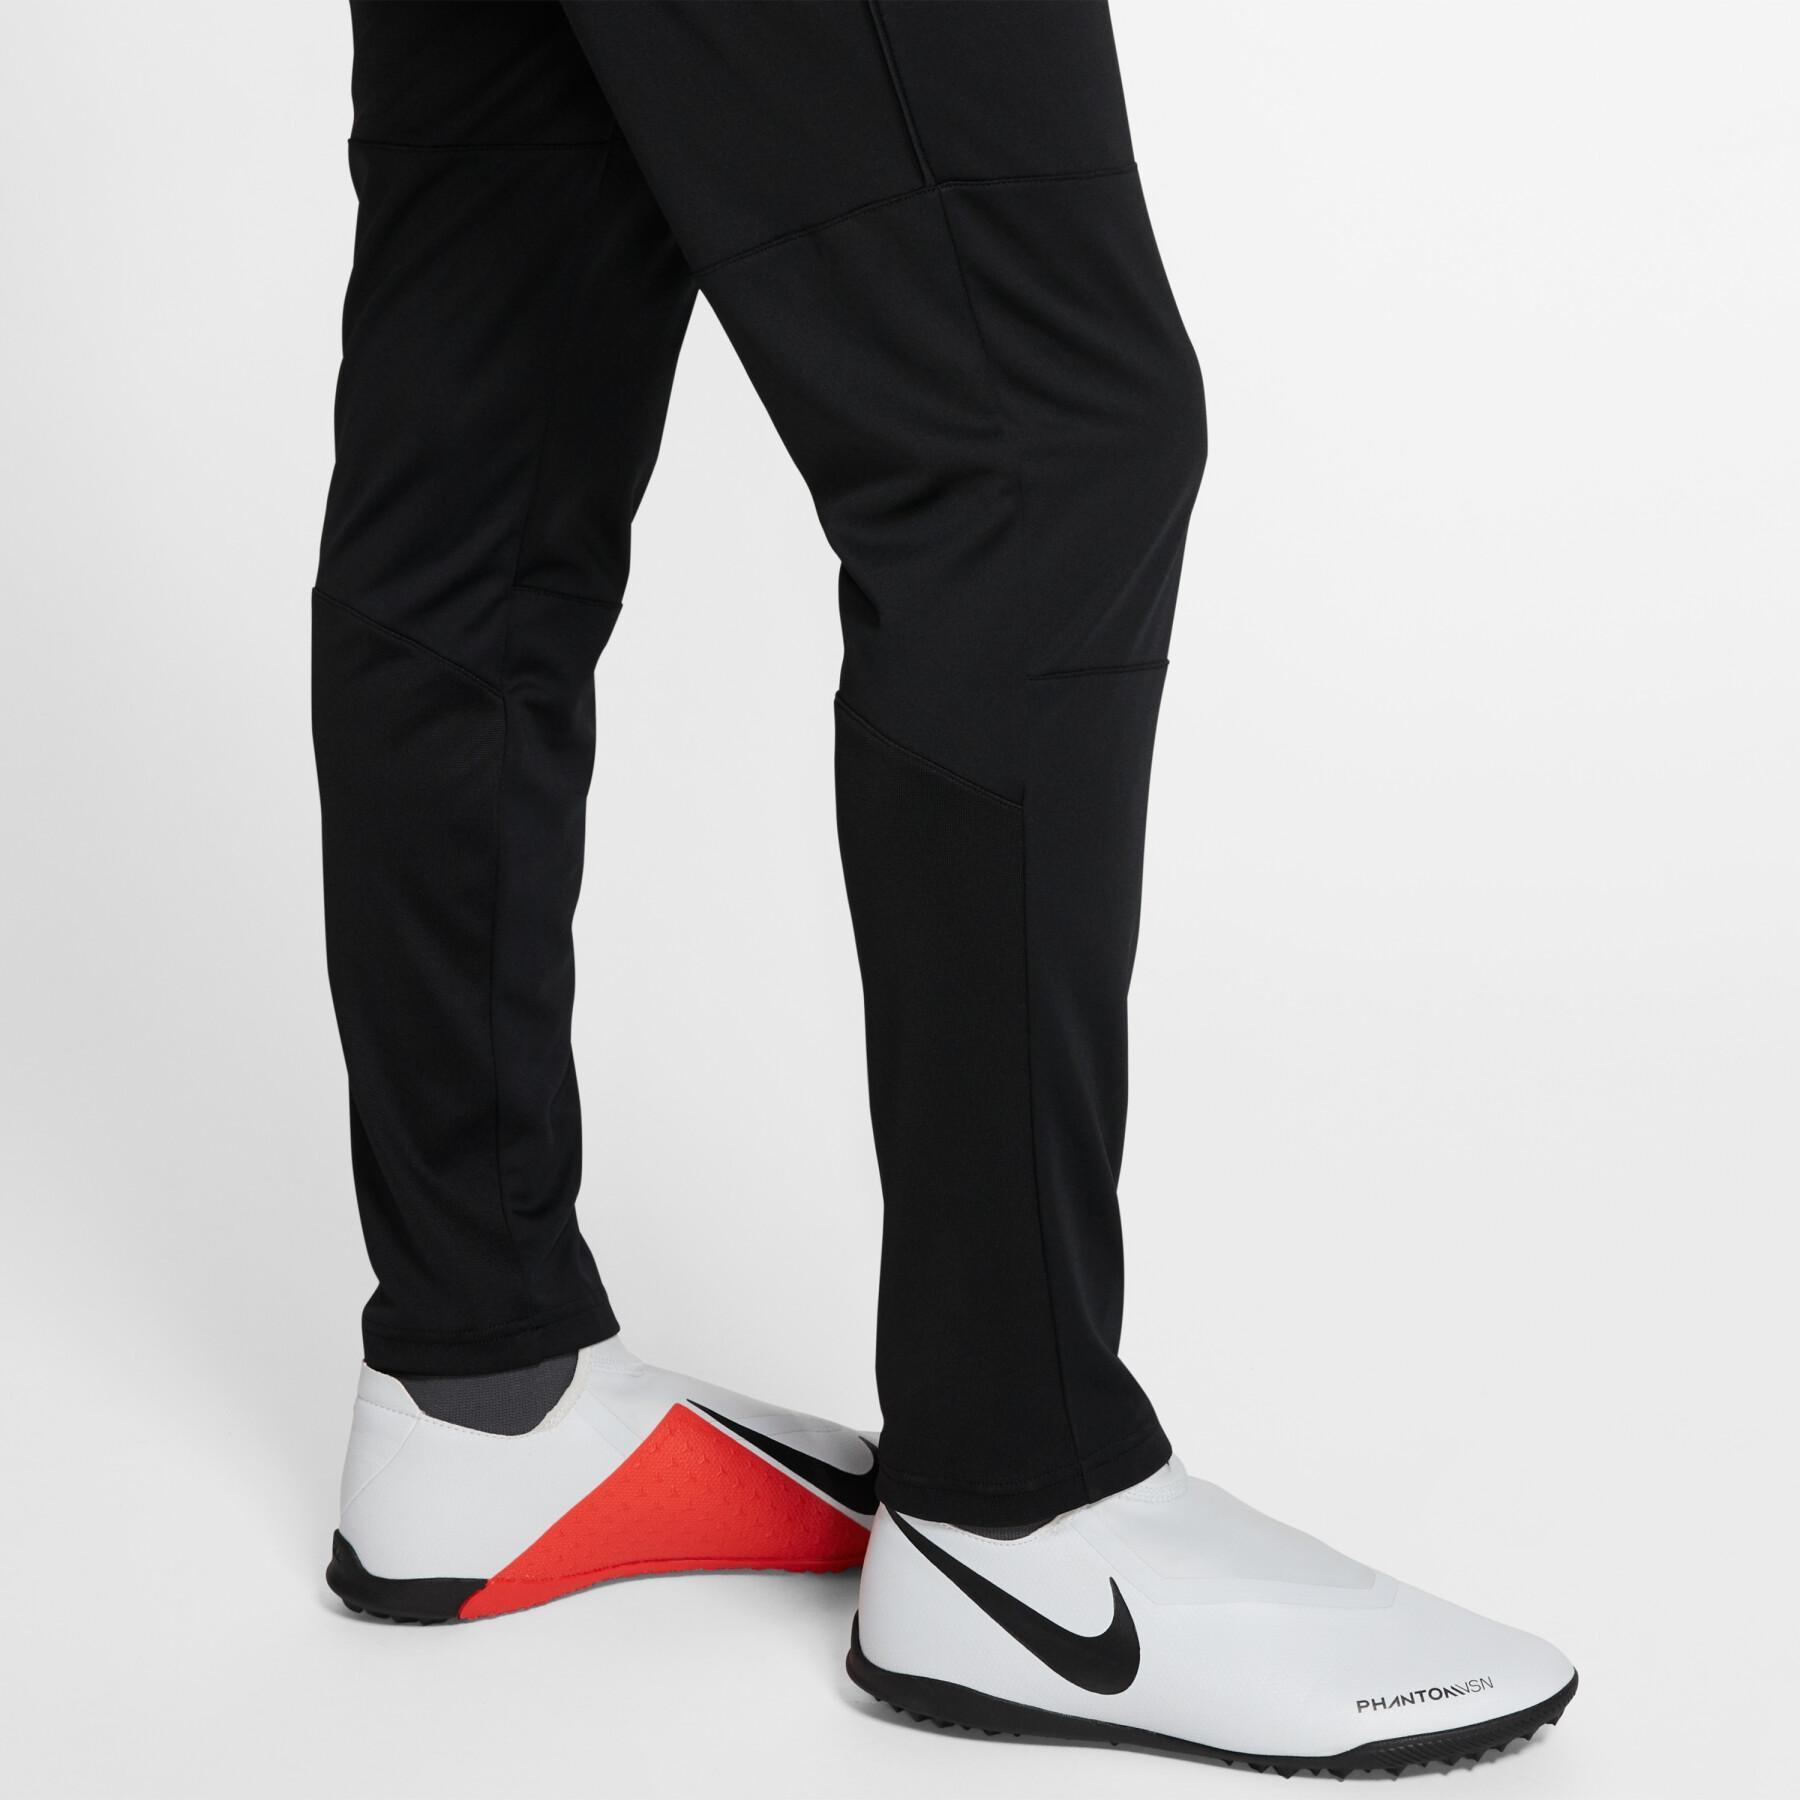 Pantaloni Nike Dri-FIT Park